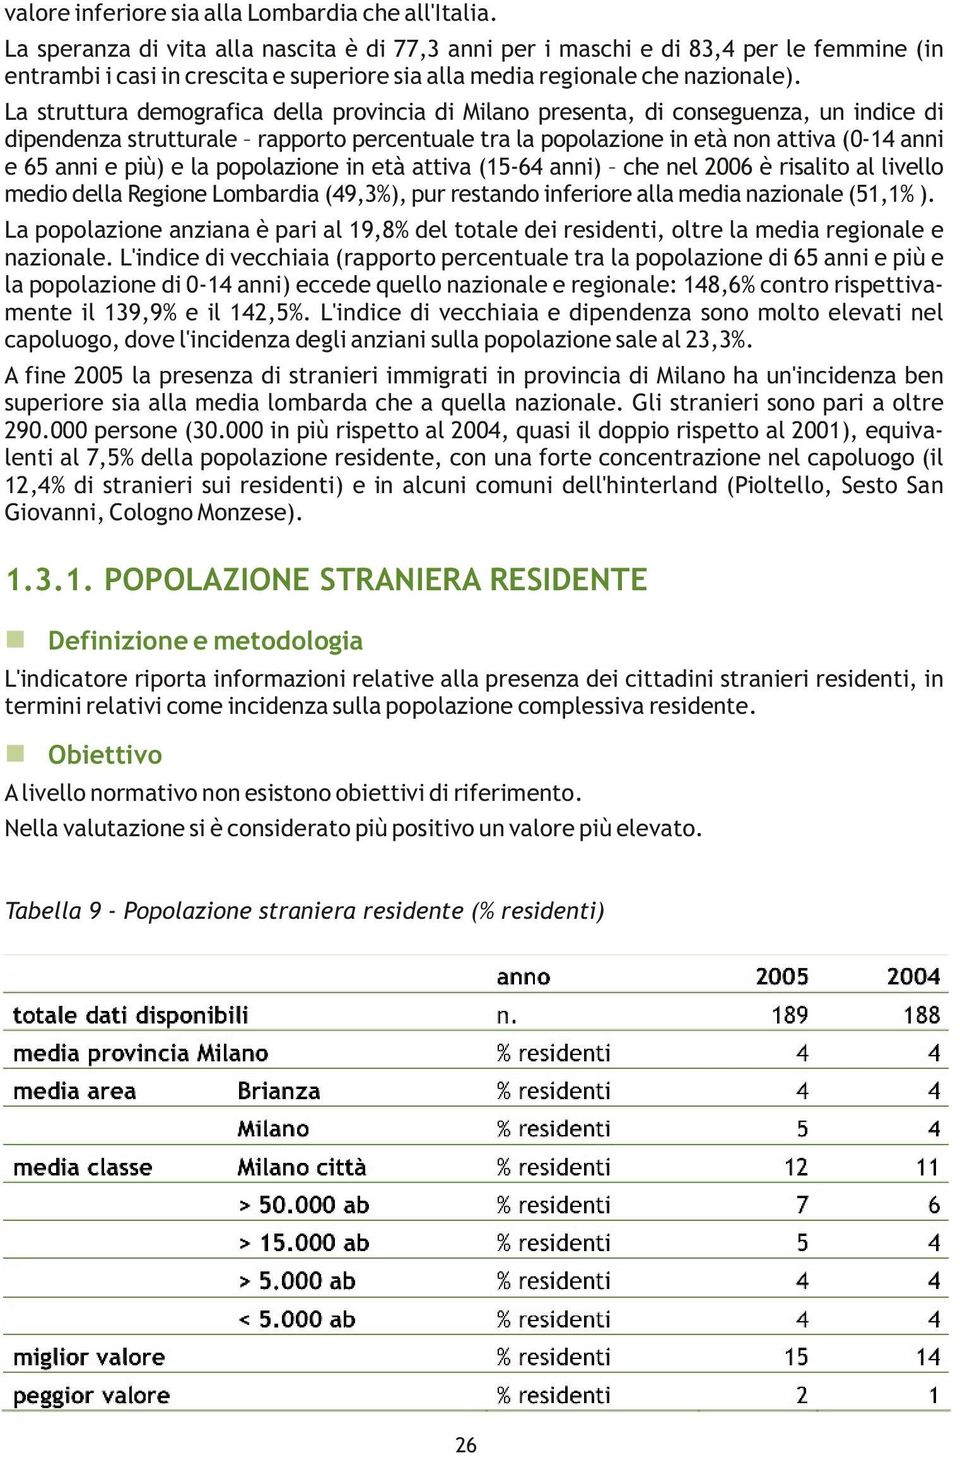 La struttura demografica della provincia di Milano presenta, di conseguenza, un indice di dipendenza strutturale rapporto percentuale tra la popolazione in età non attiva (0-14 anni e 65 anni e più)